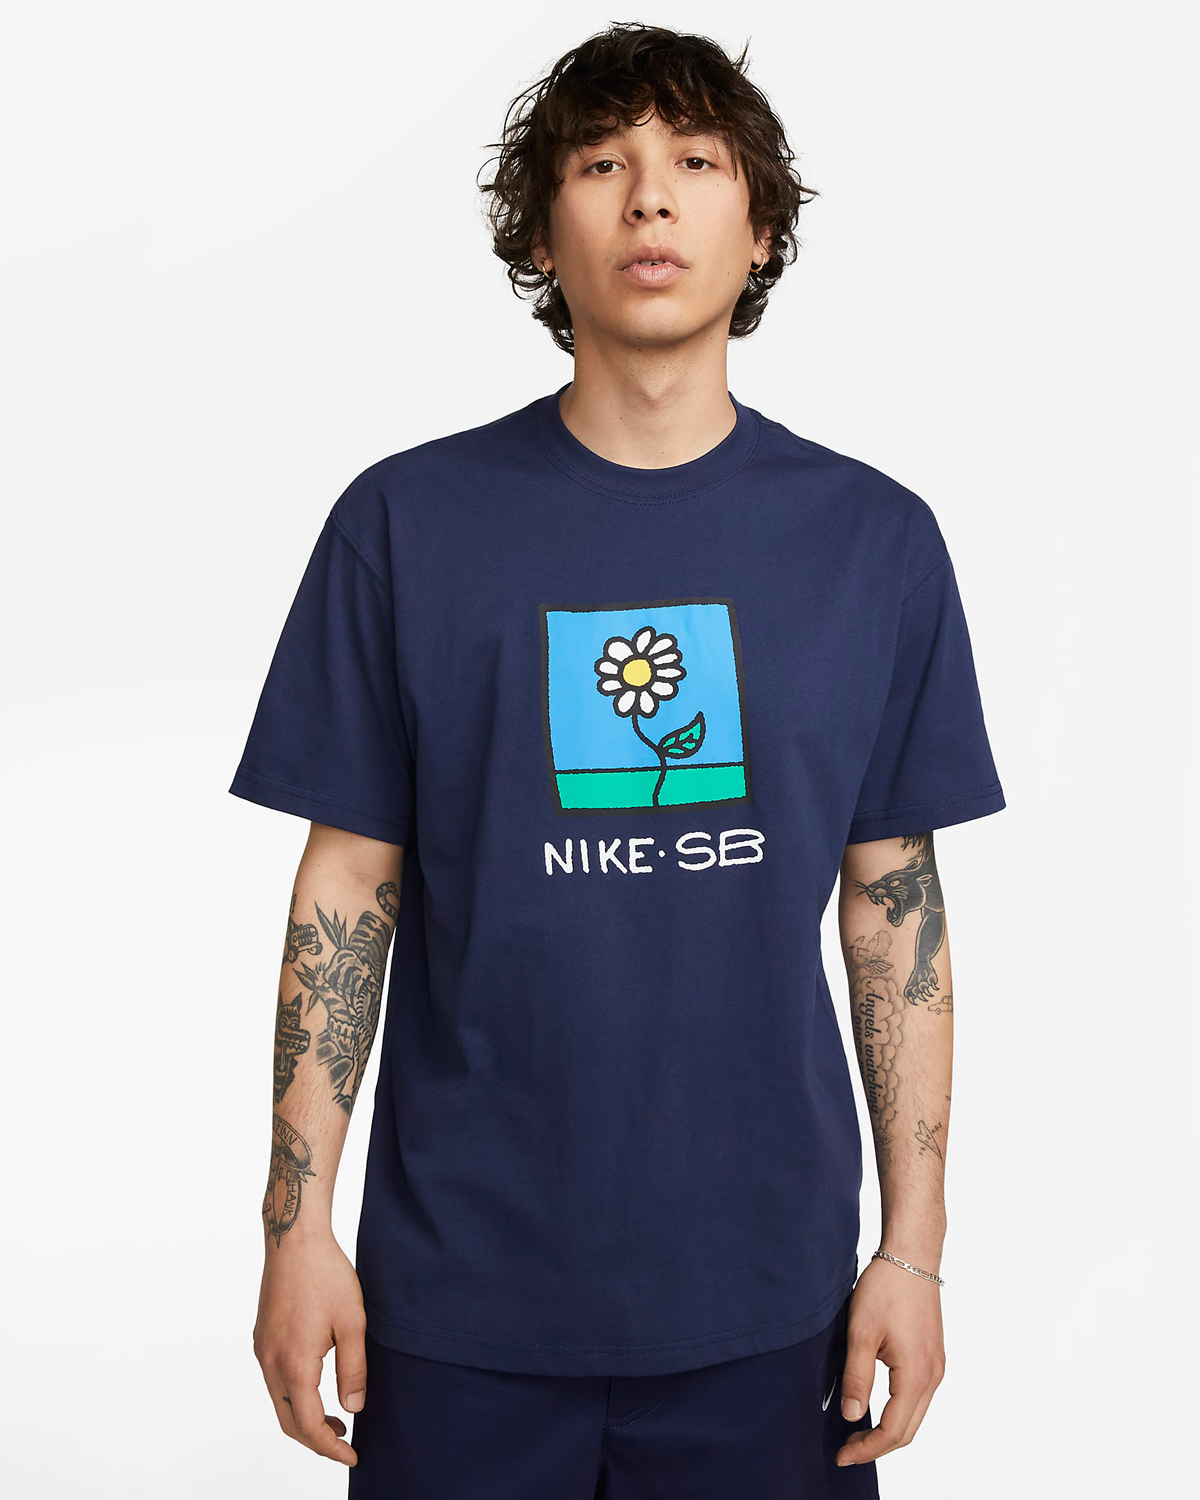 Nike-SB-T-Shirt-Midnight-Navy